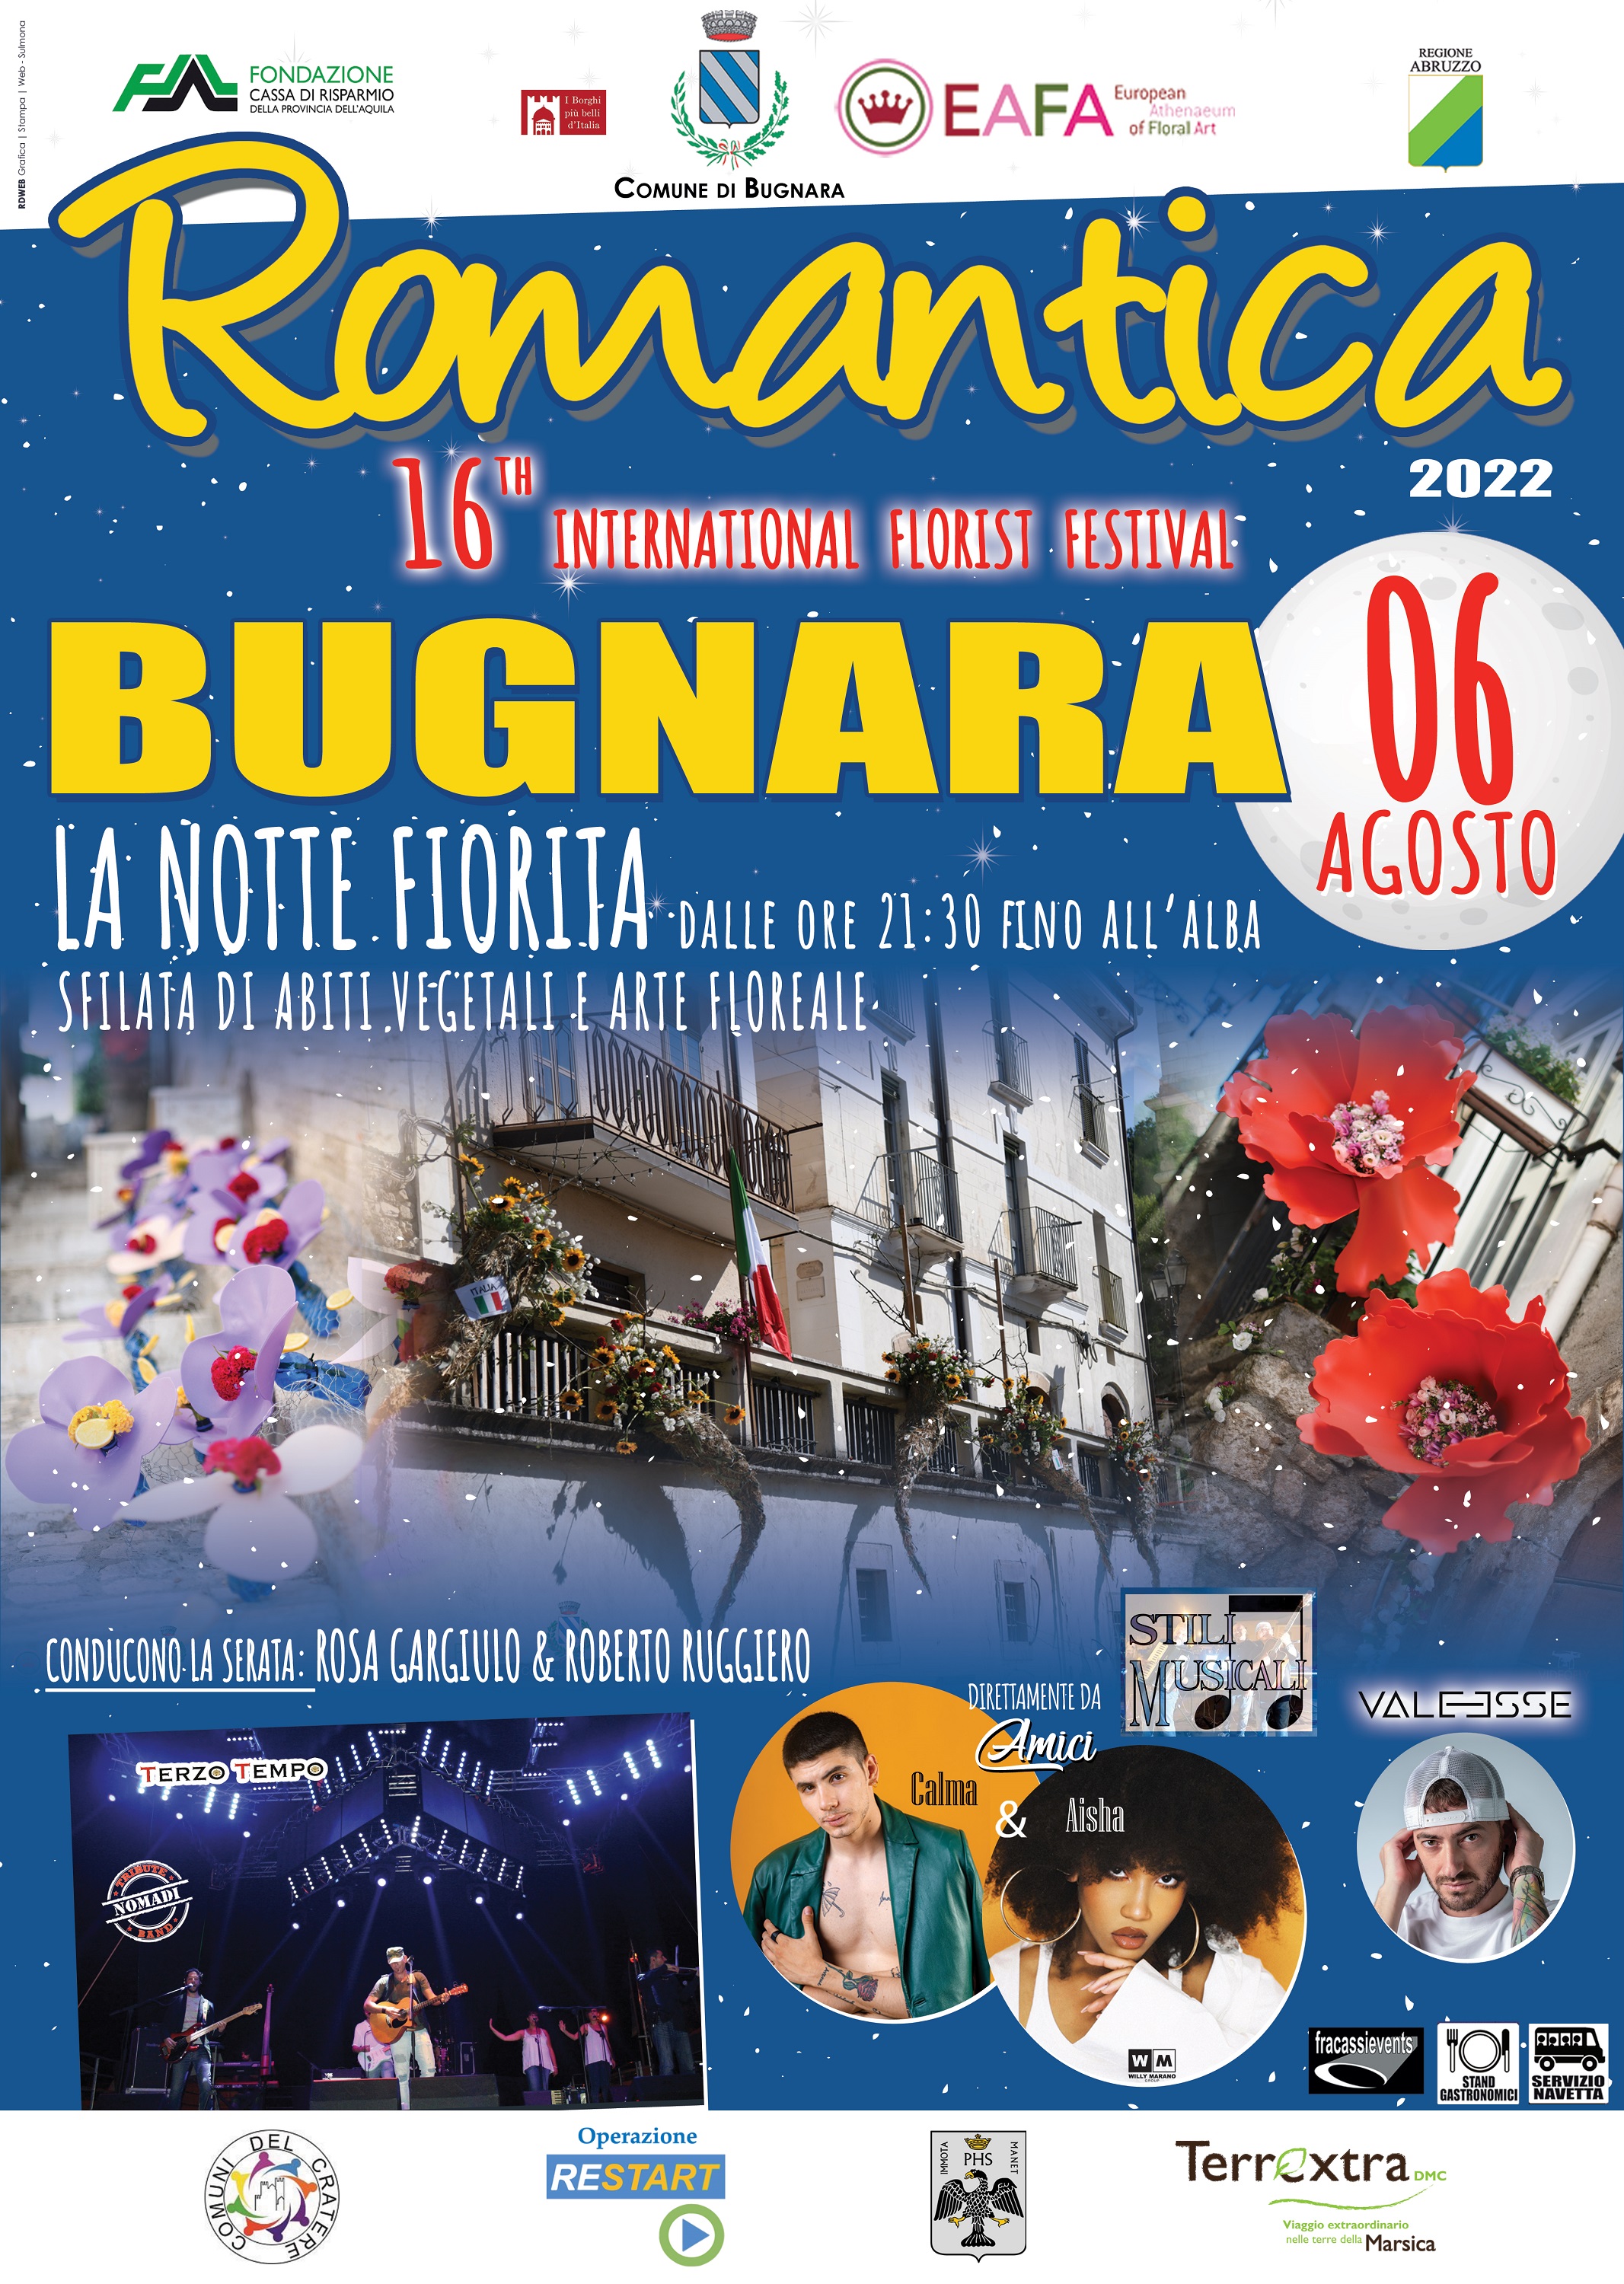 Foto 1 - Bugnara: il 6 agosto torna Romantica il Festival floreale famoso nel mondo